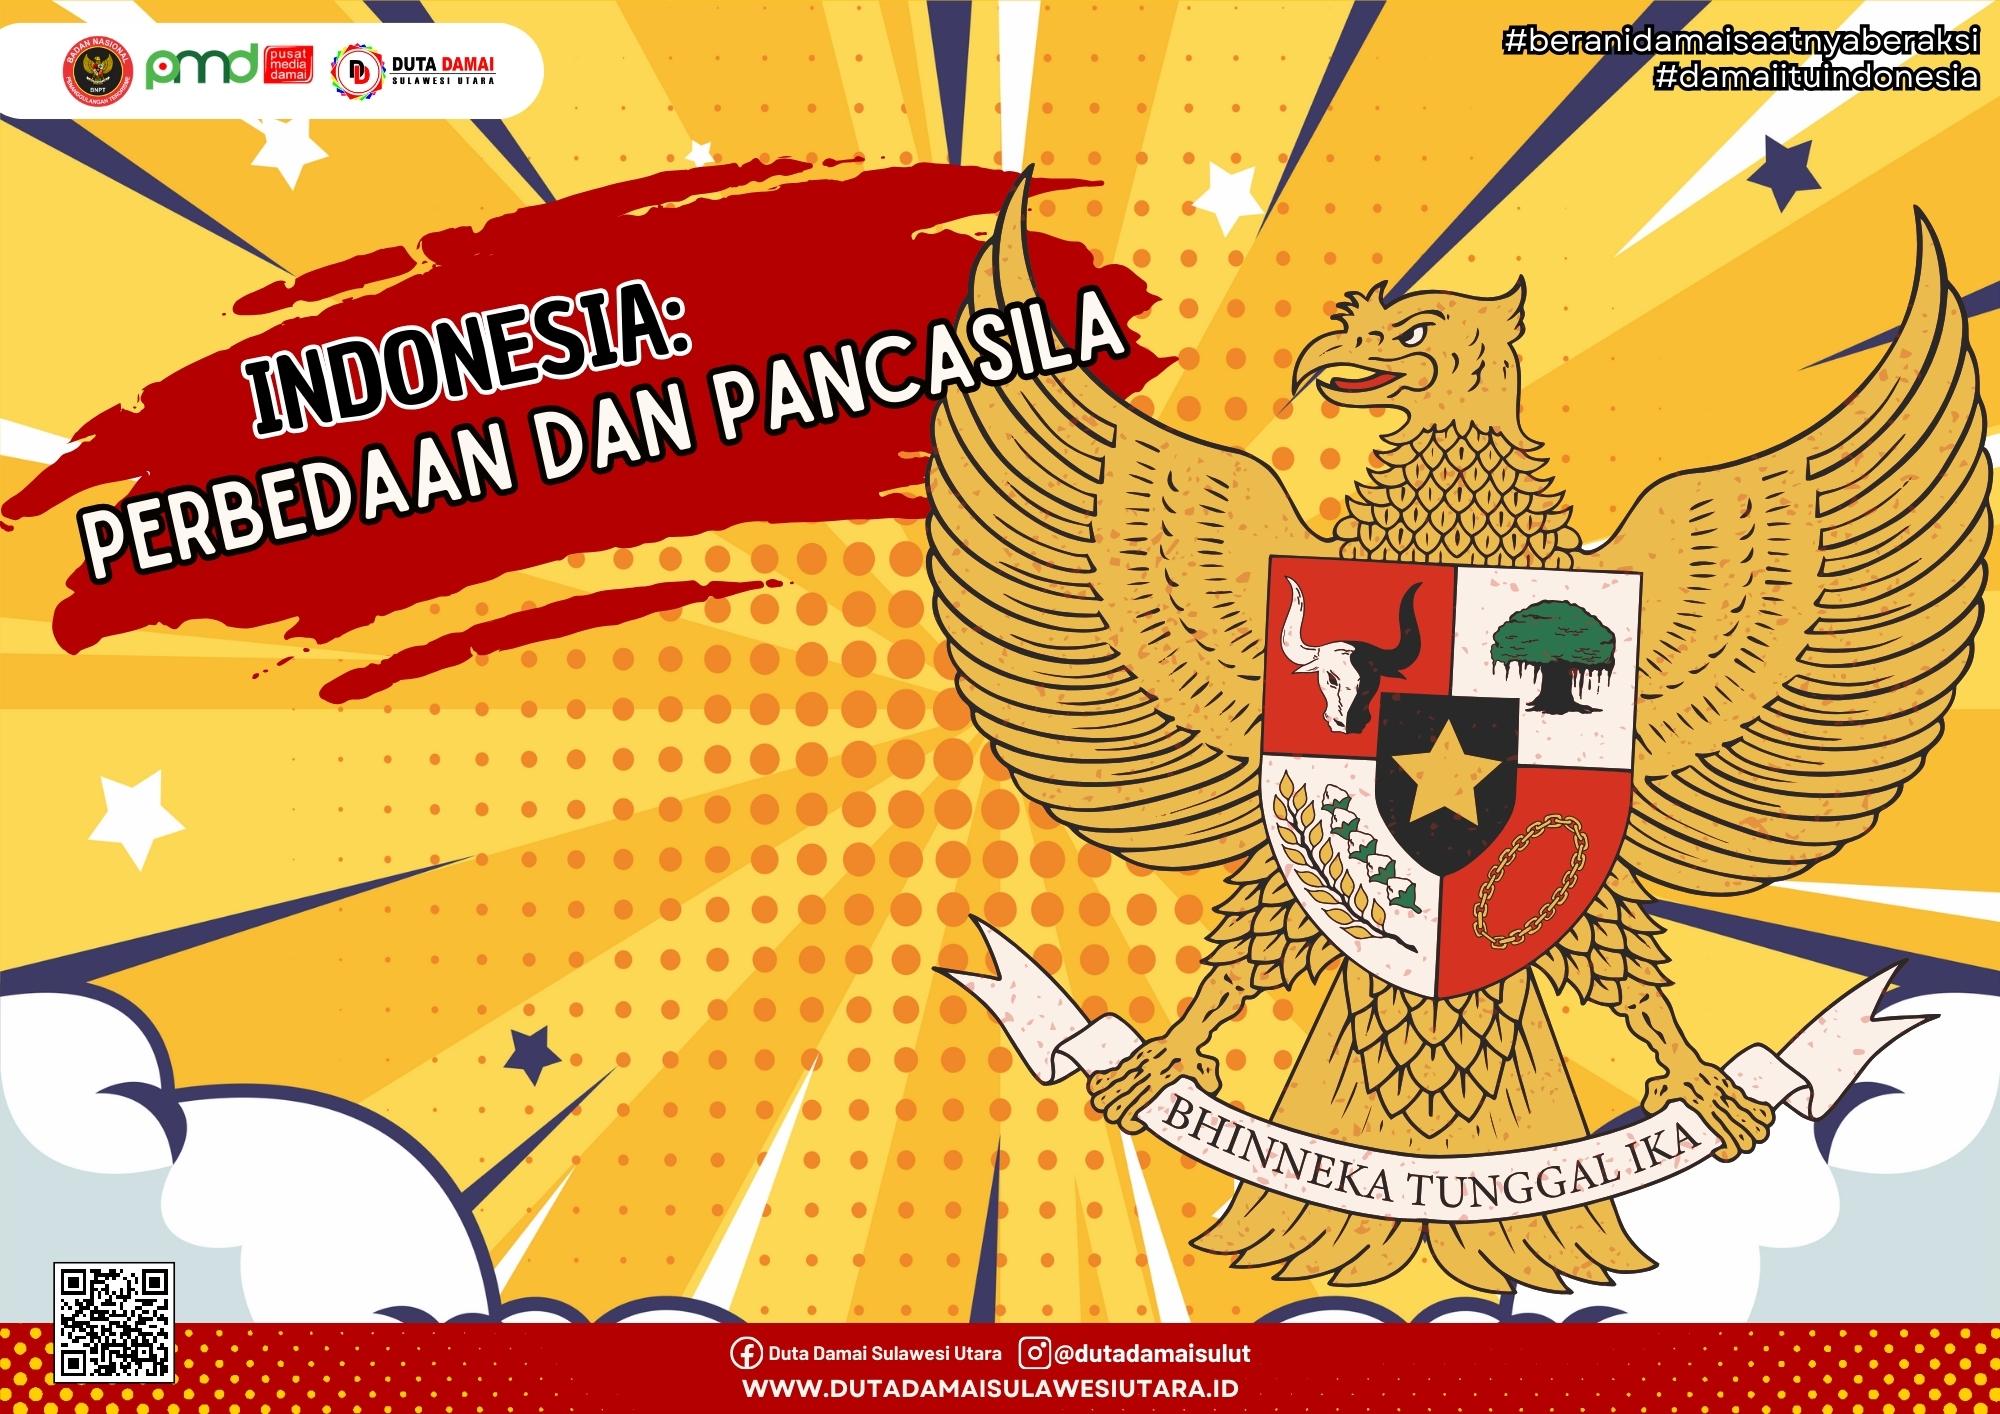 Indonesia: Perbedaan dan Pancasila